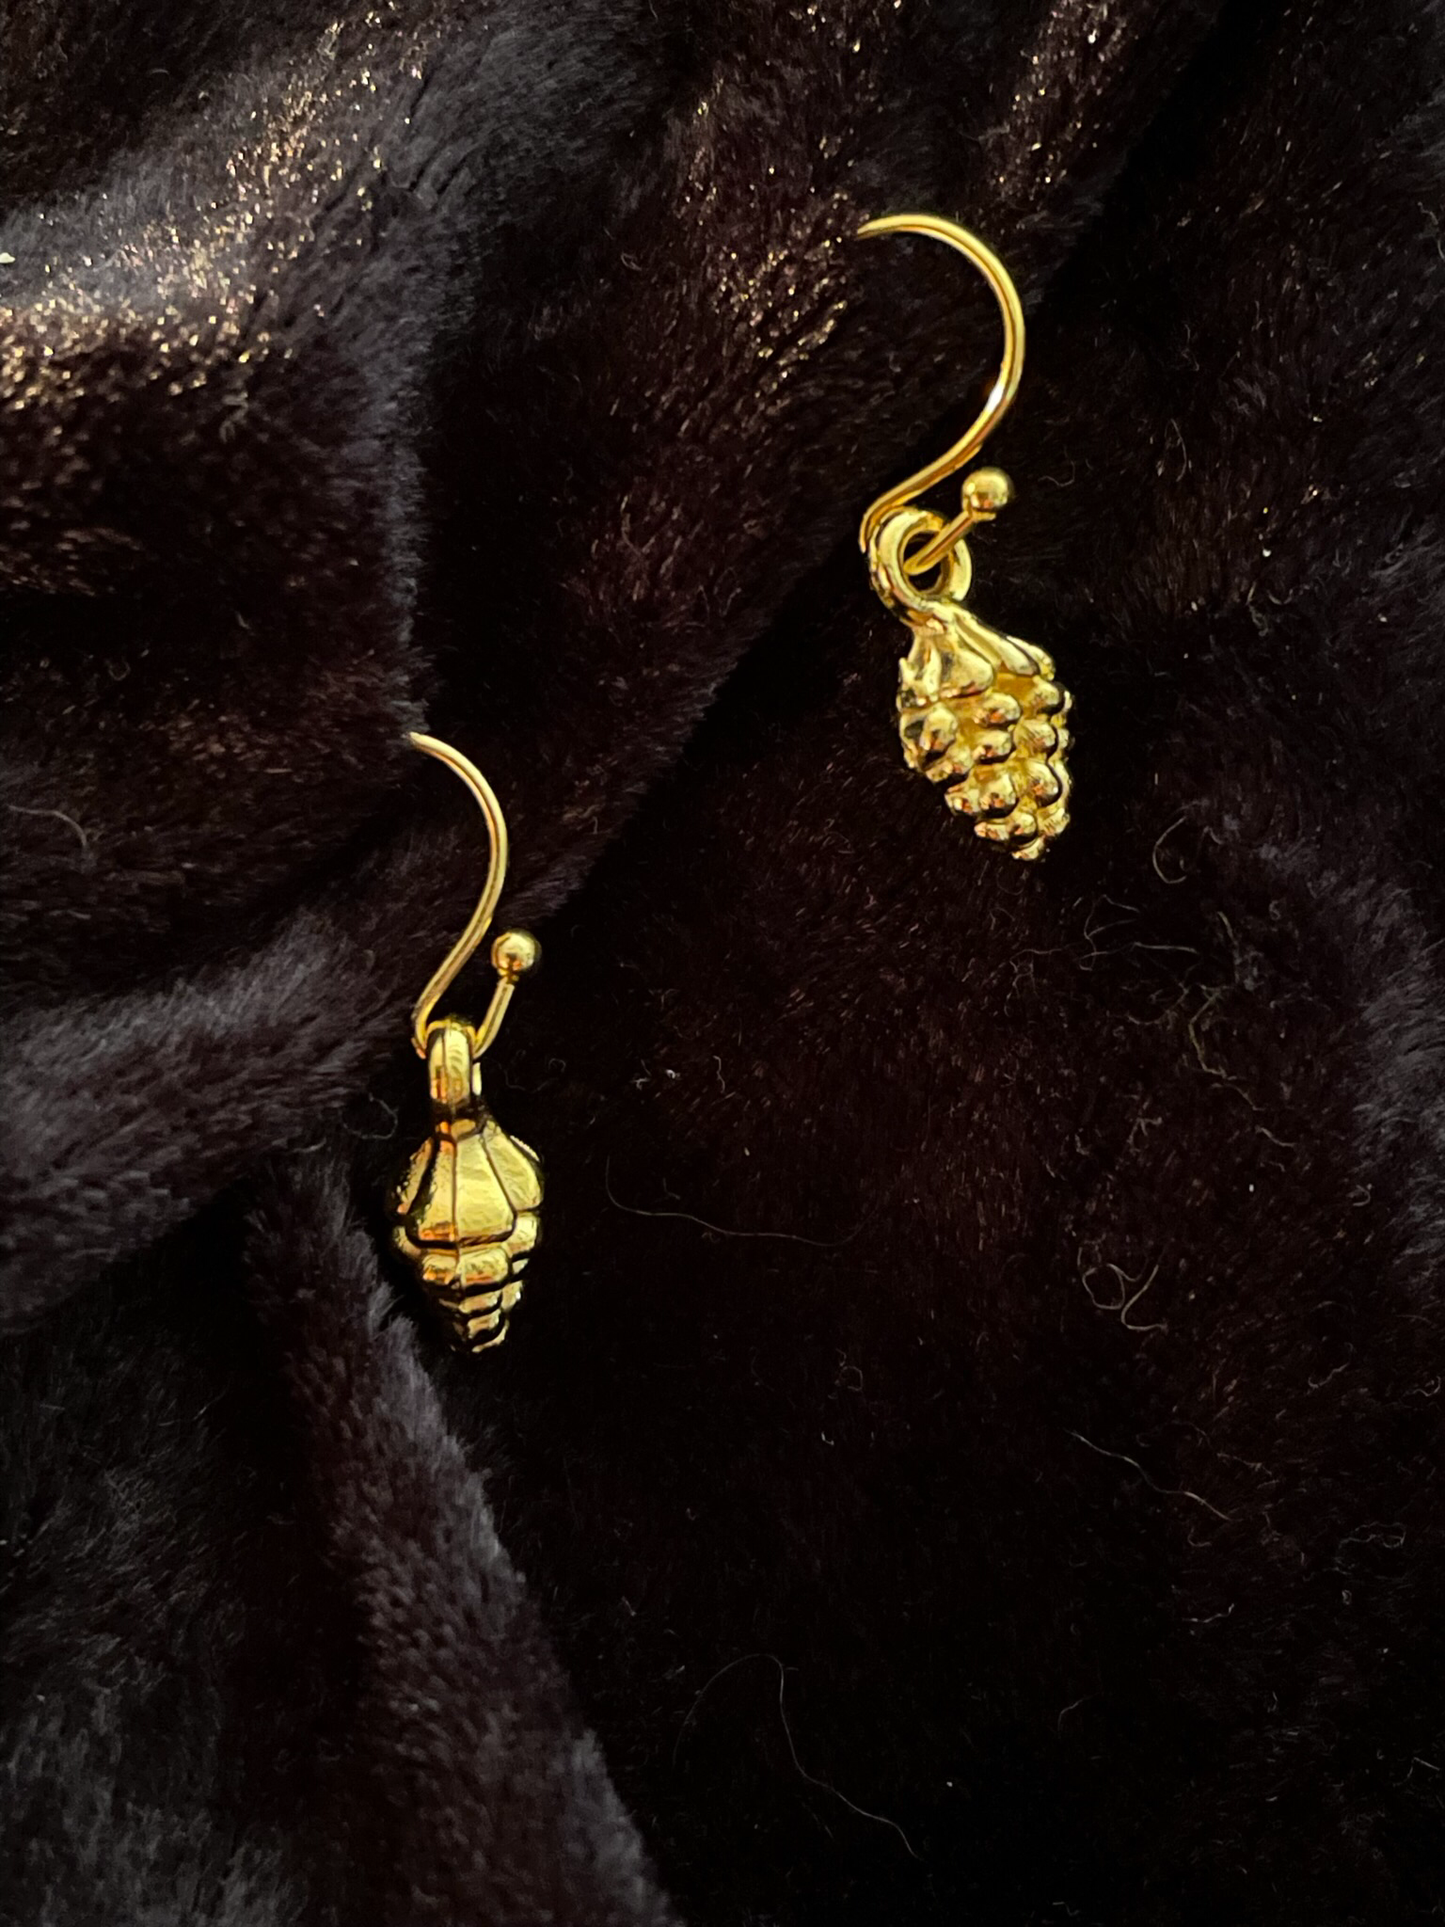 Festive fir cone drop earrings